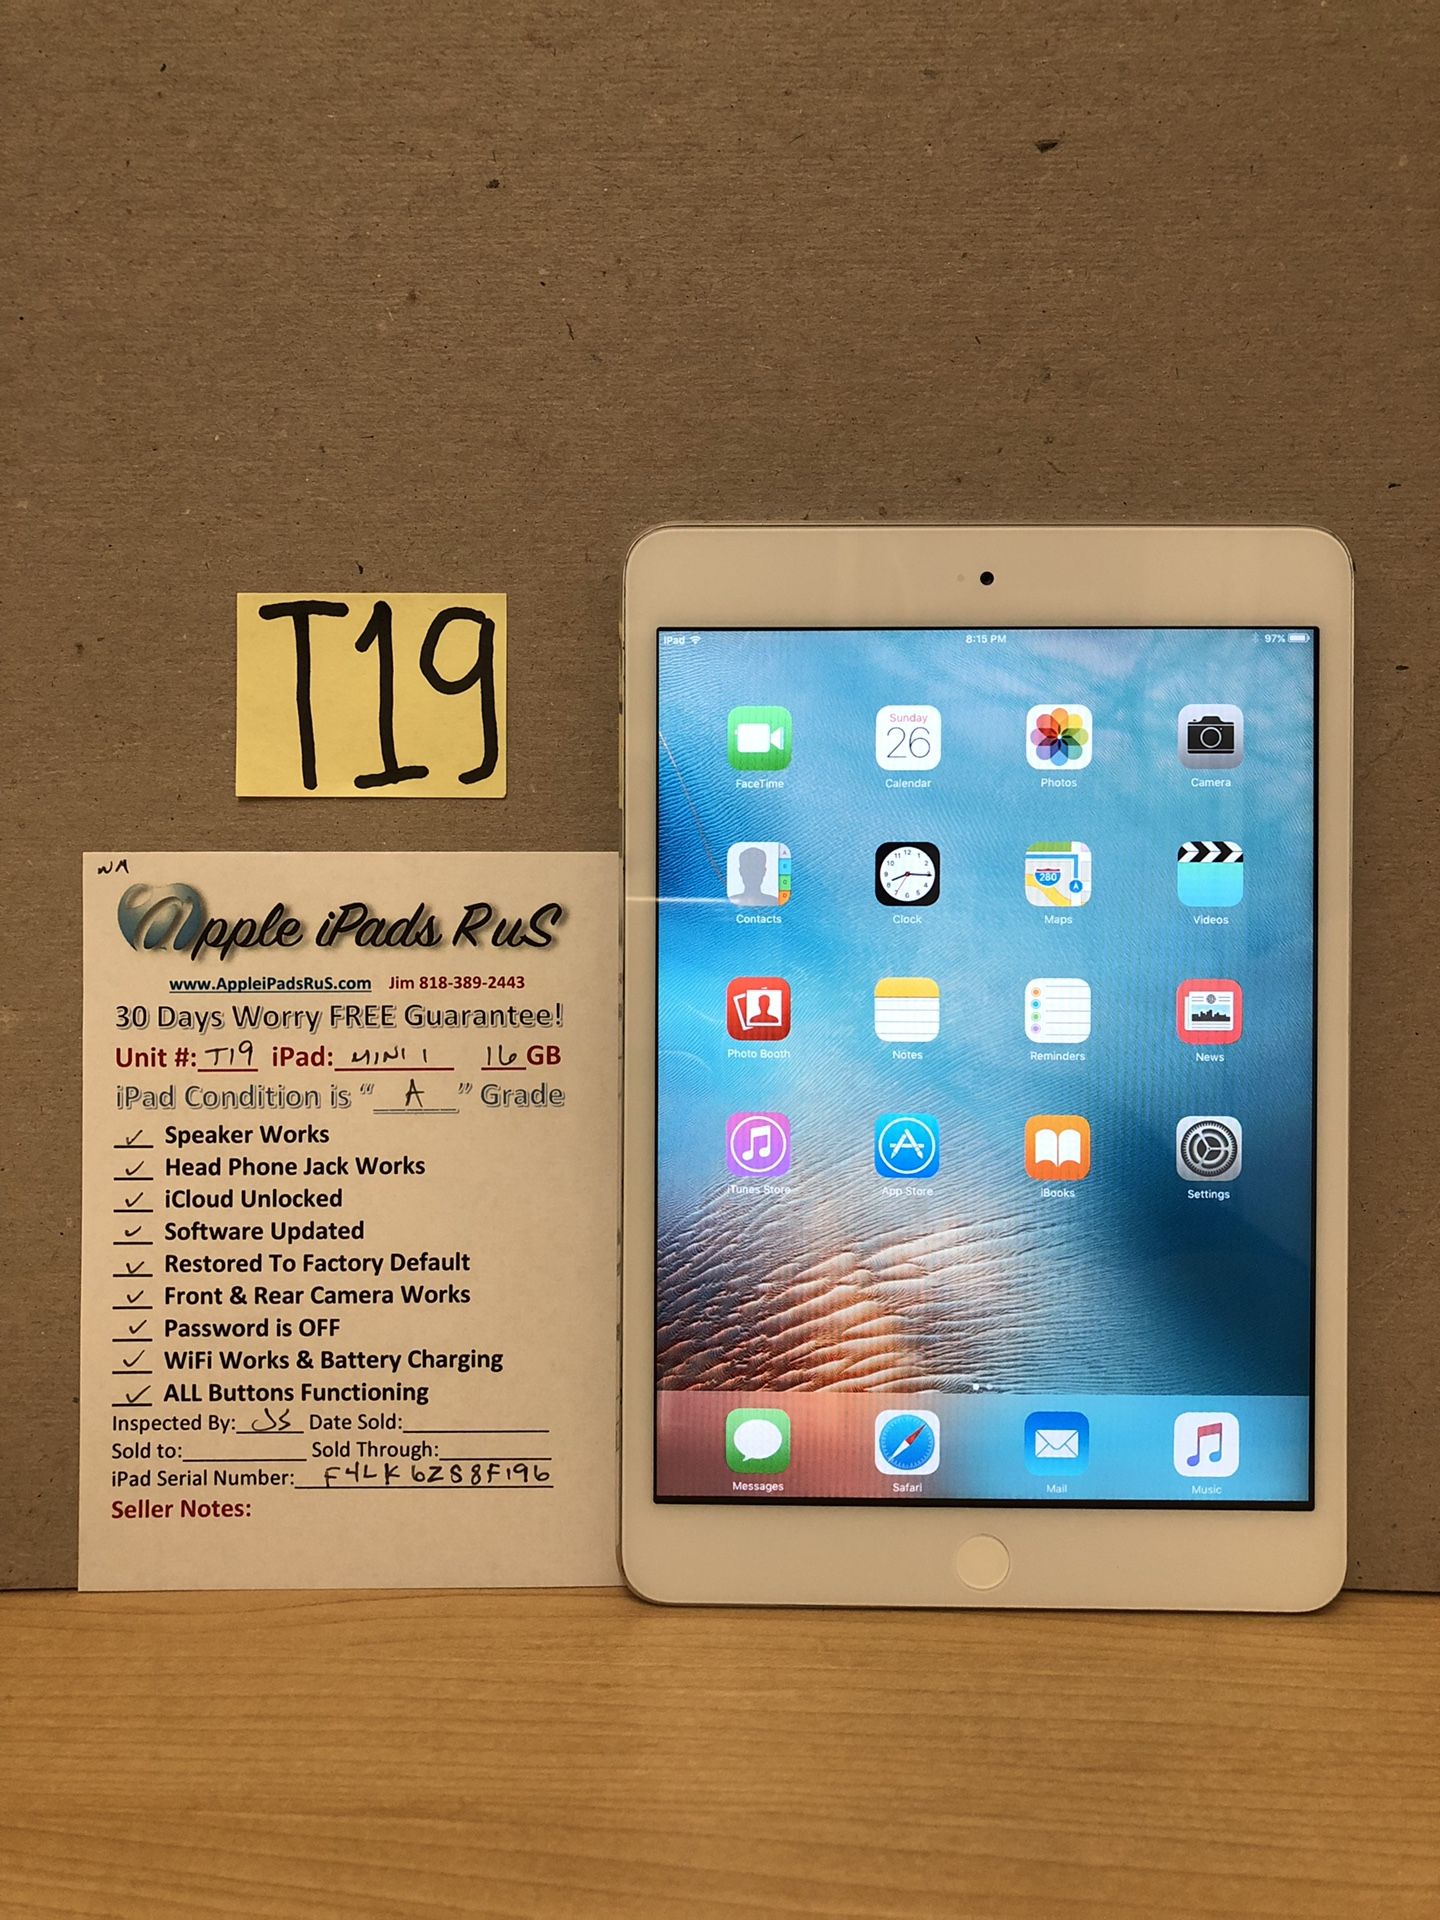 T19 - iPad mini 1 16GB